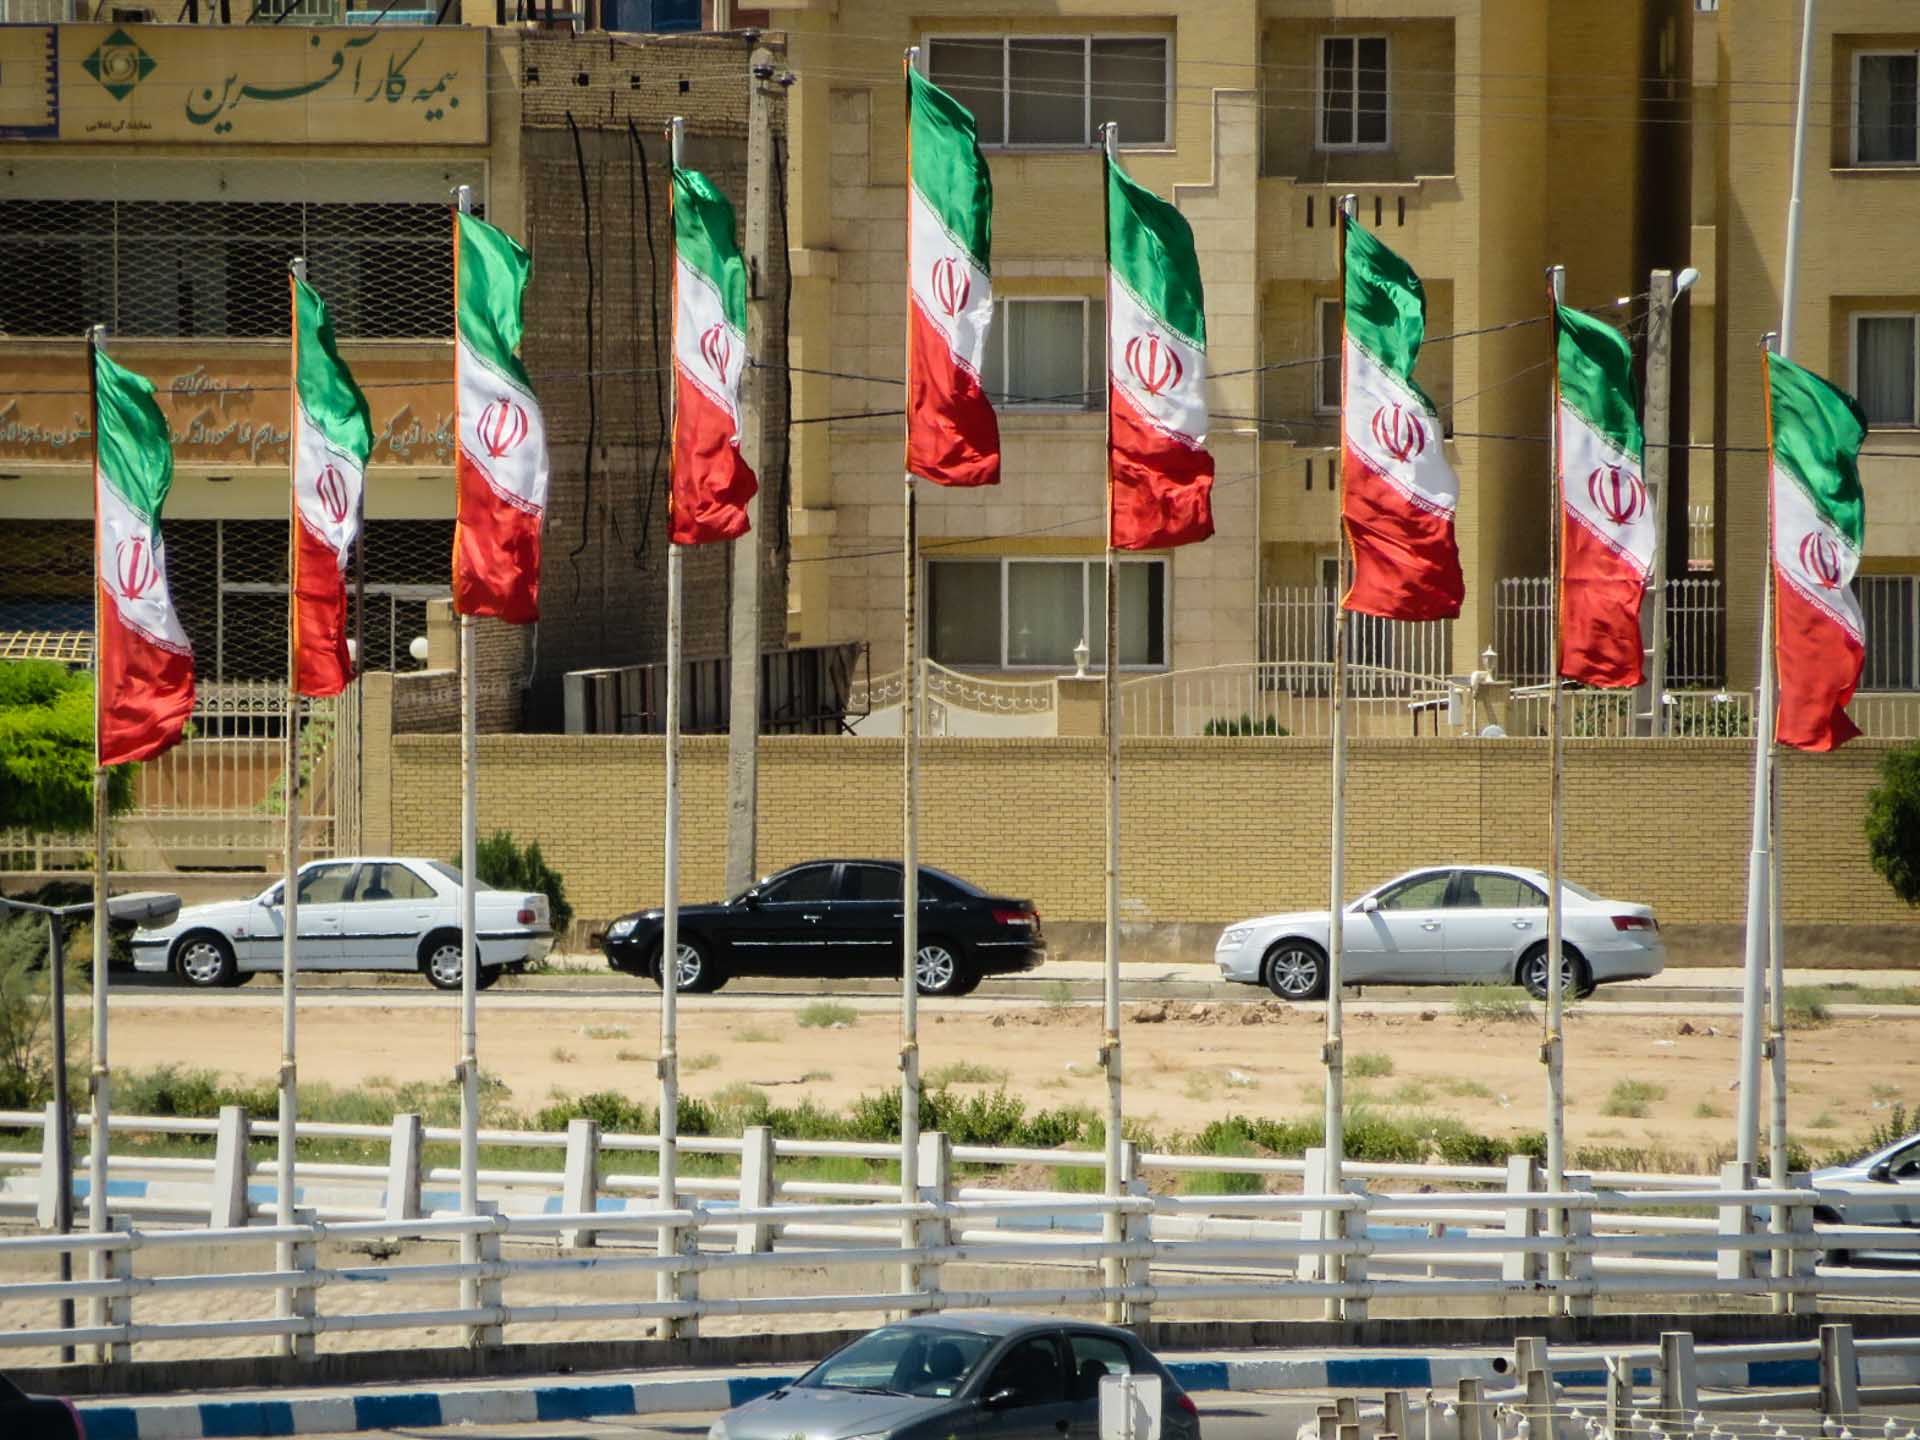 Bandeiras do Irã nas ruas da cidade com carros passando